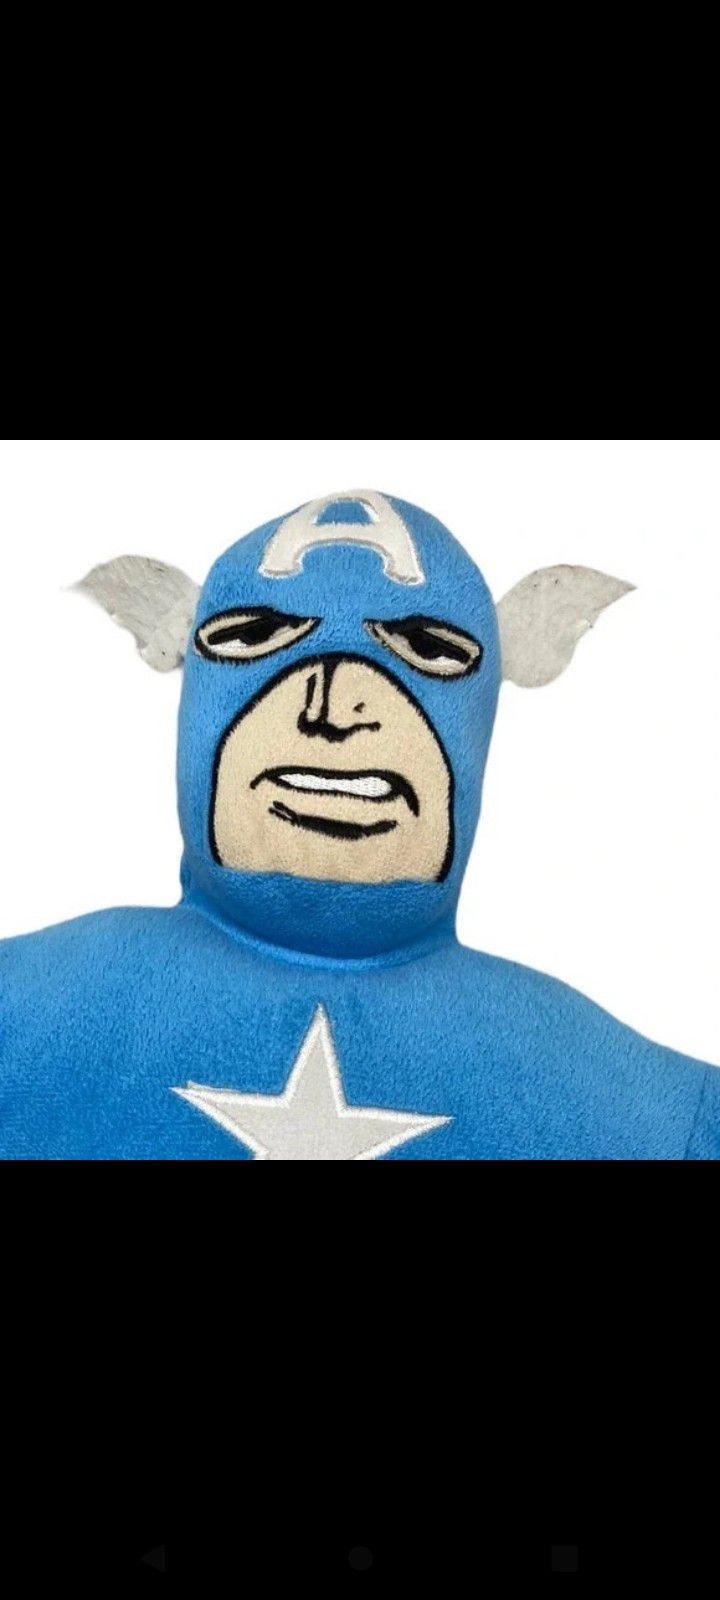 Marvel avengers captain America plush 